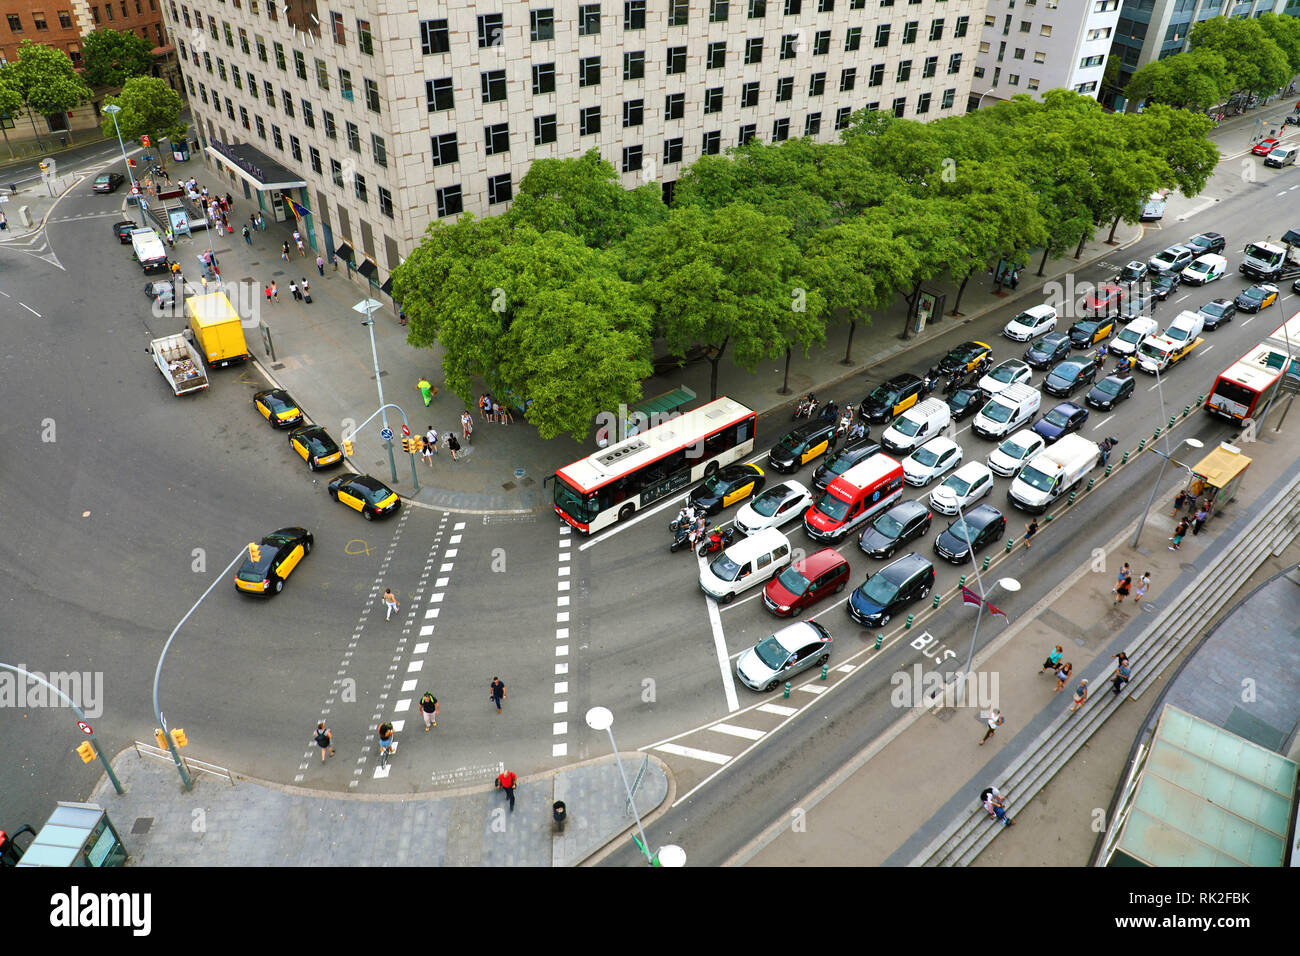 BARCELONA, España - 13 de julio de 2018: Vista aérea del tráfico de autos en la calle principal de Barcelona, Cataluña, España Foto de stock